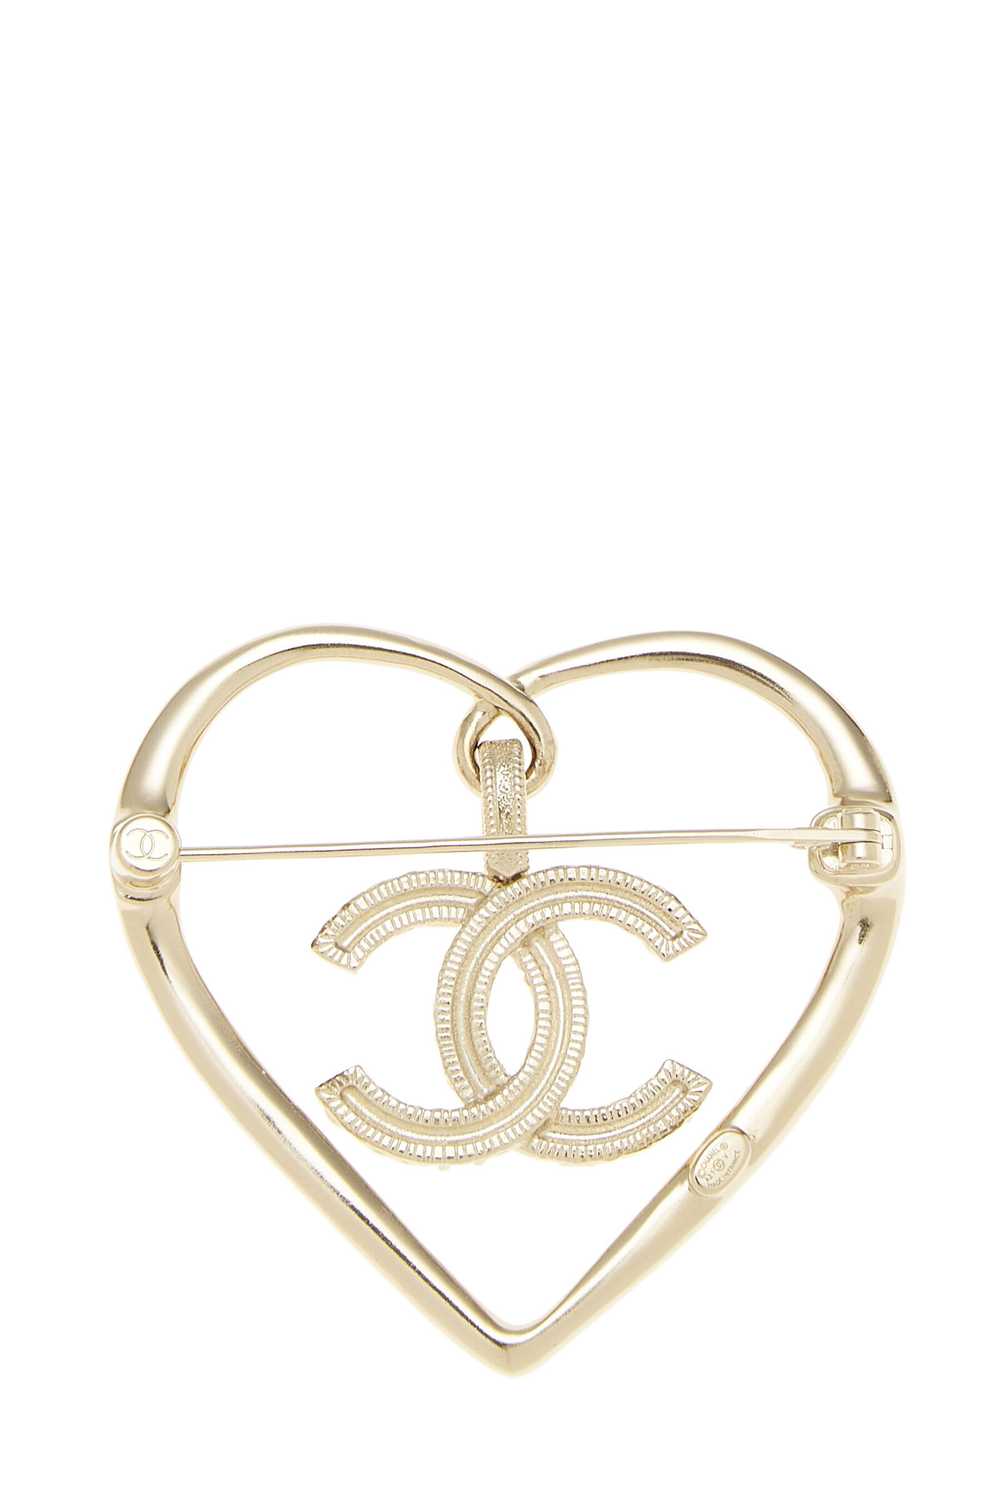 Gold & Crystal 'CC' Heart Pin - image 2